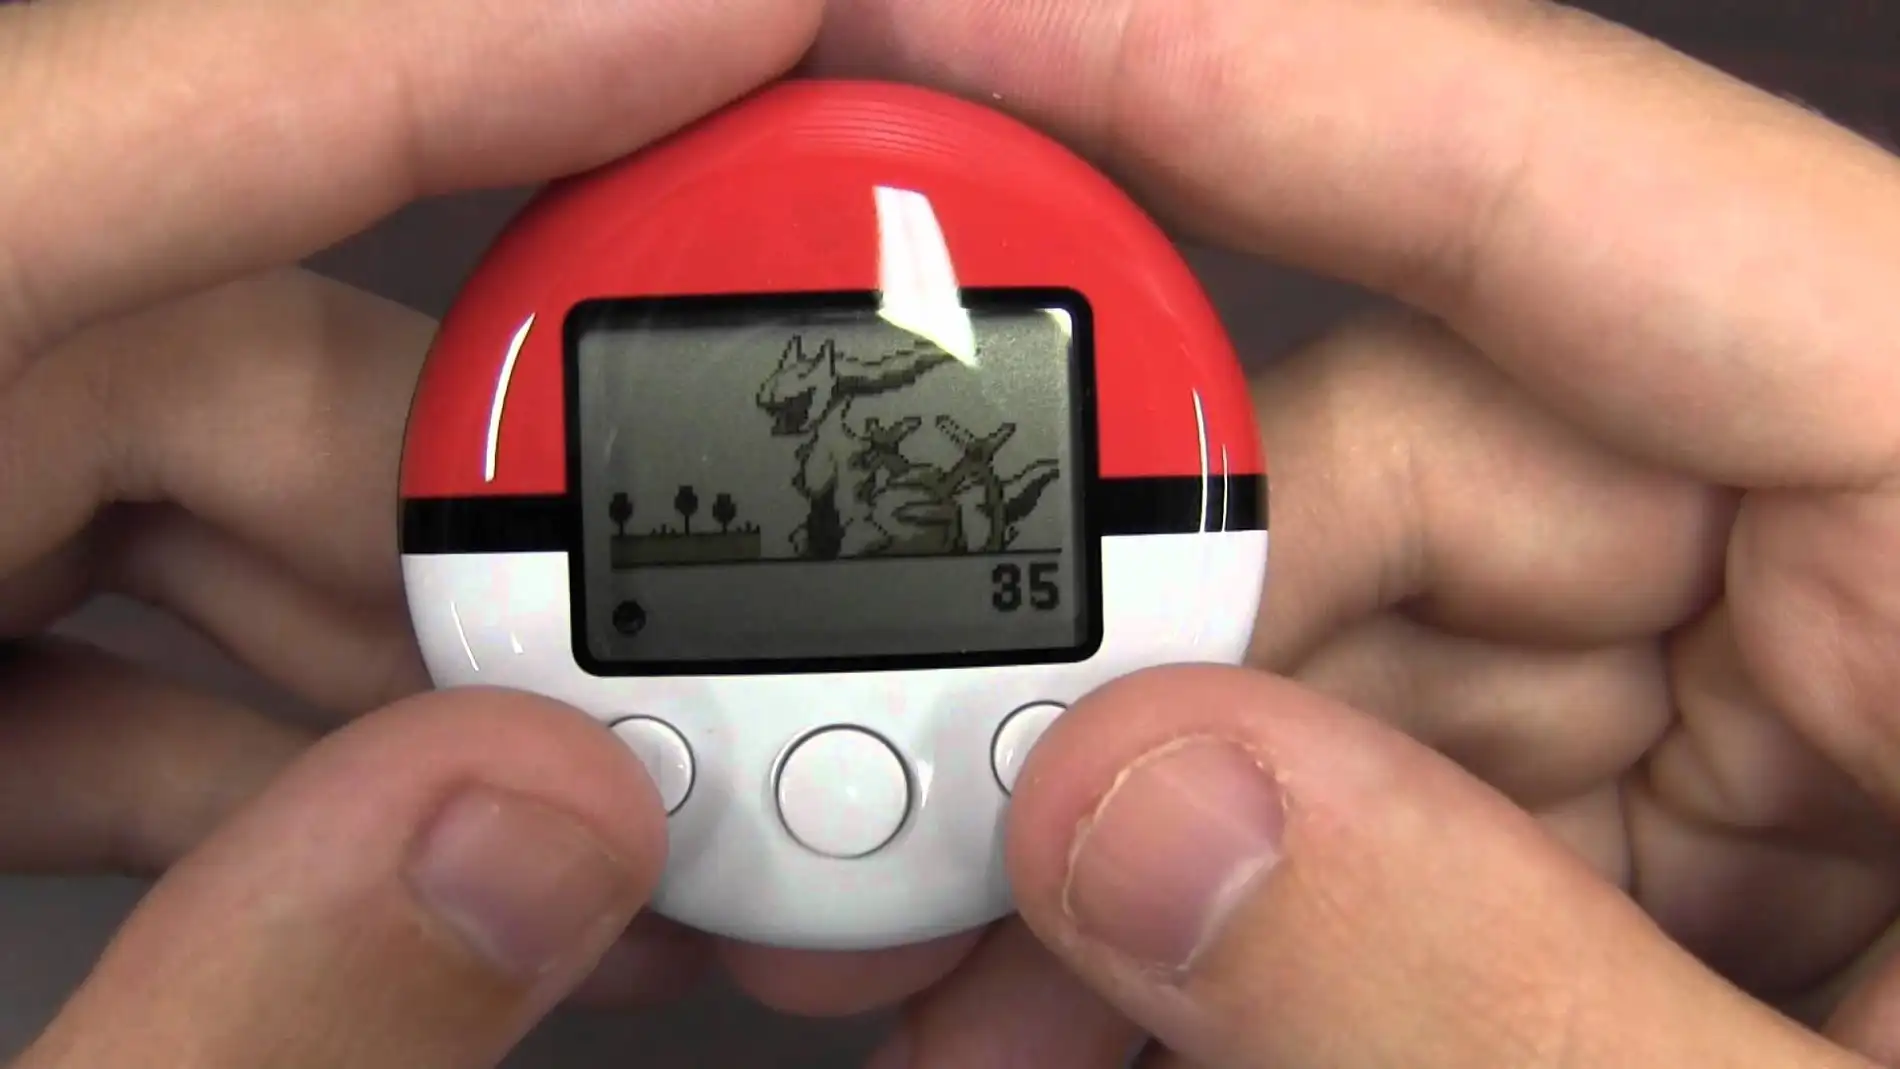 Descubren un asombroso secreto en el tamagotchi de Pokémon 8 años después